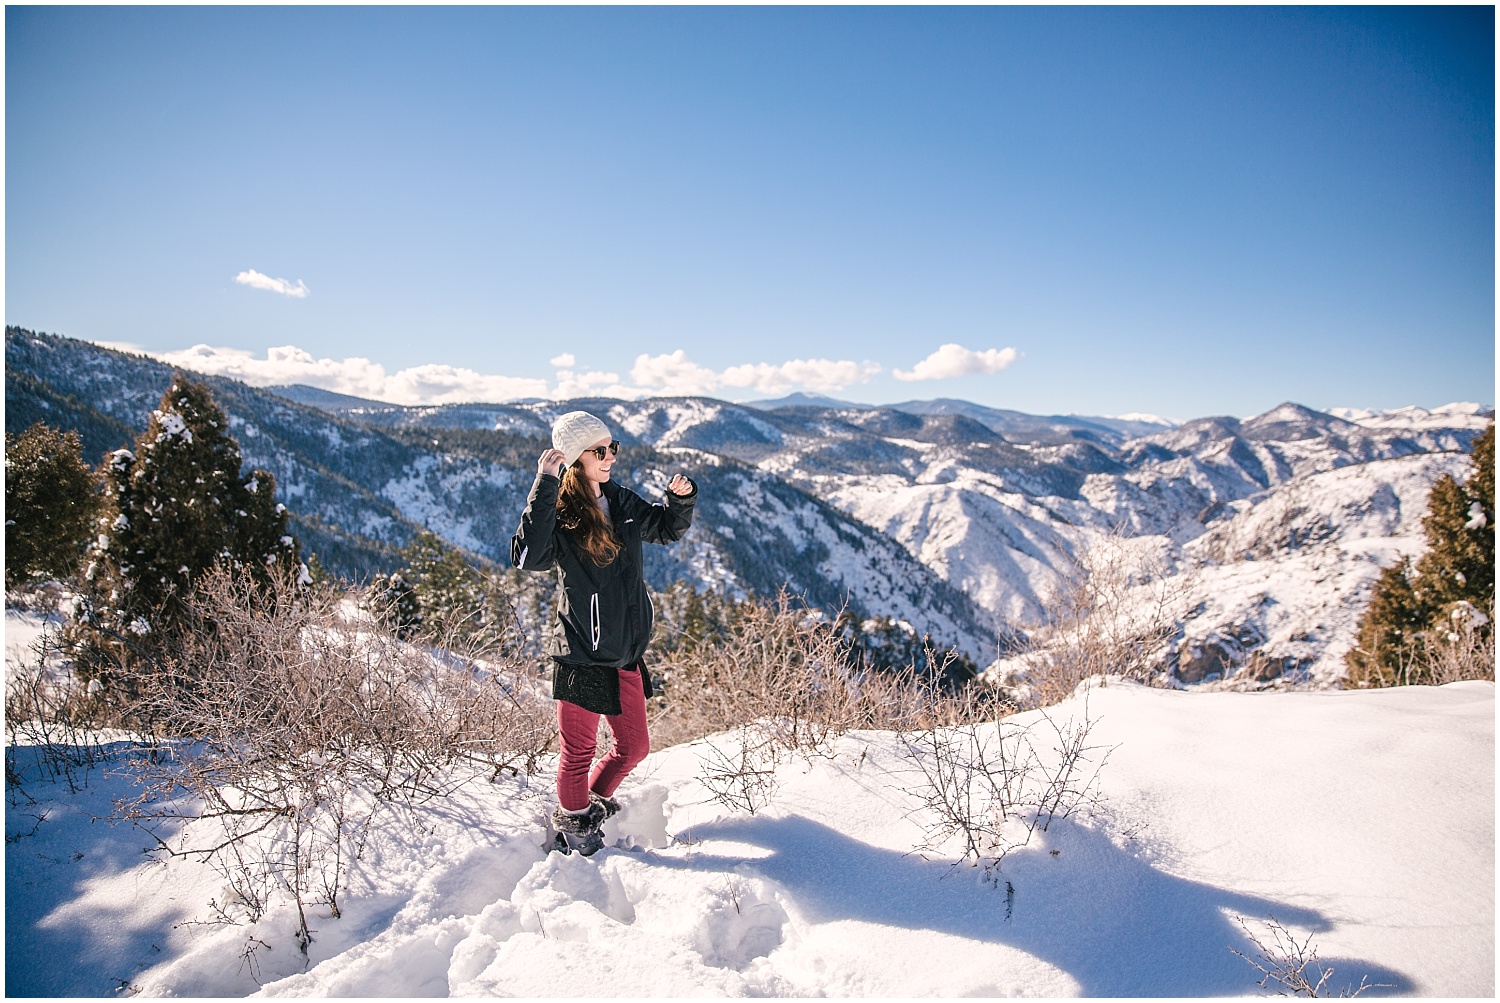 Denver wedding photographer winter adventure photos at Lookout Mountain Colorado